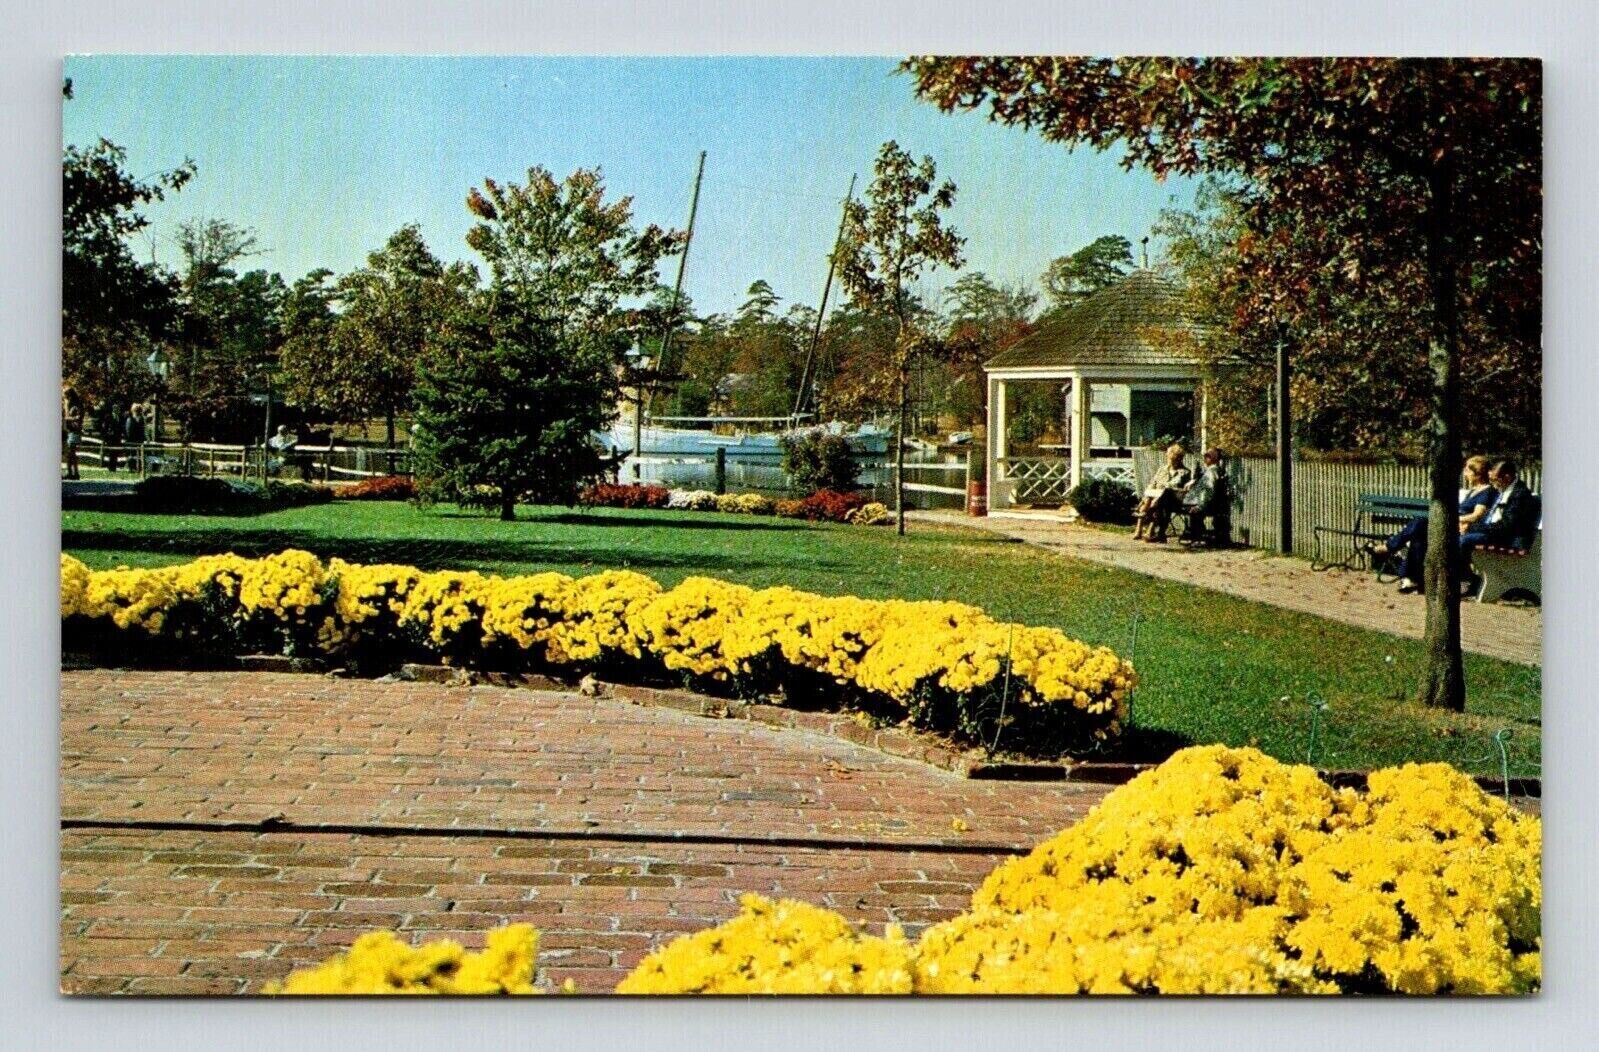 Smithville New Jersey Historic Town Gazebo Scenic Landmark Chrome Postcard